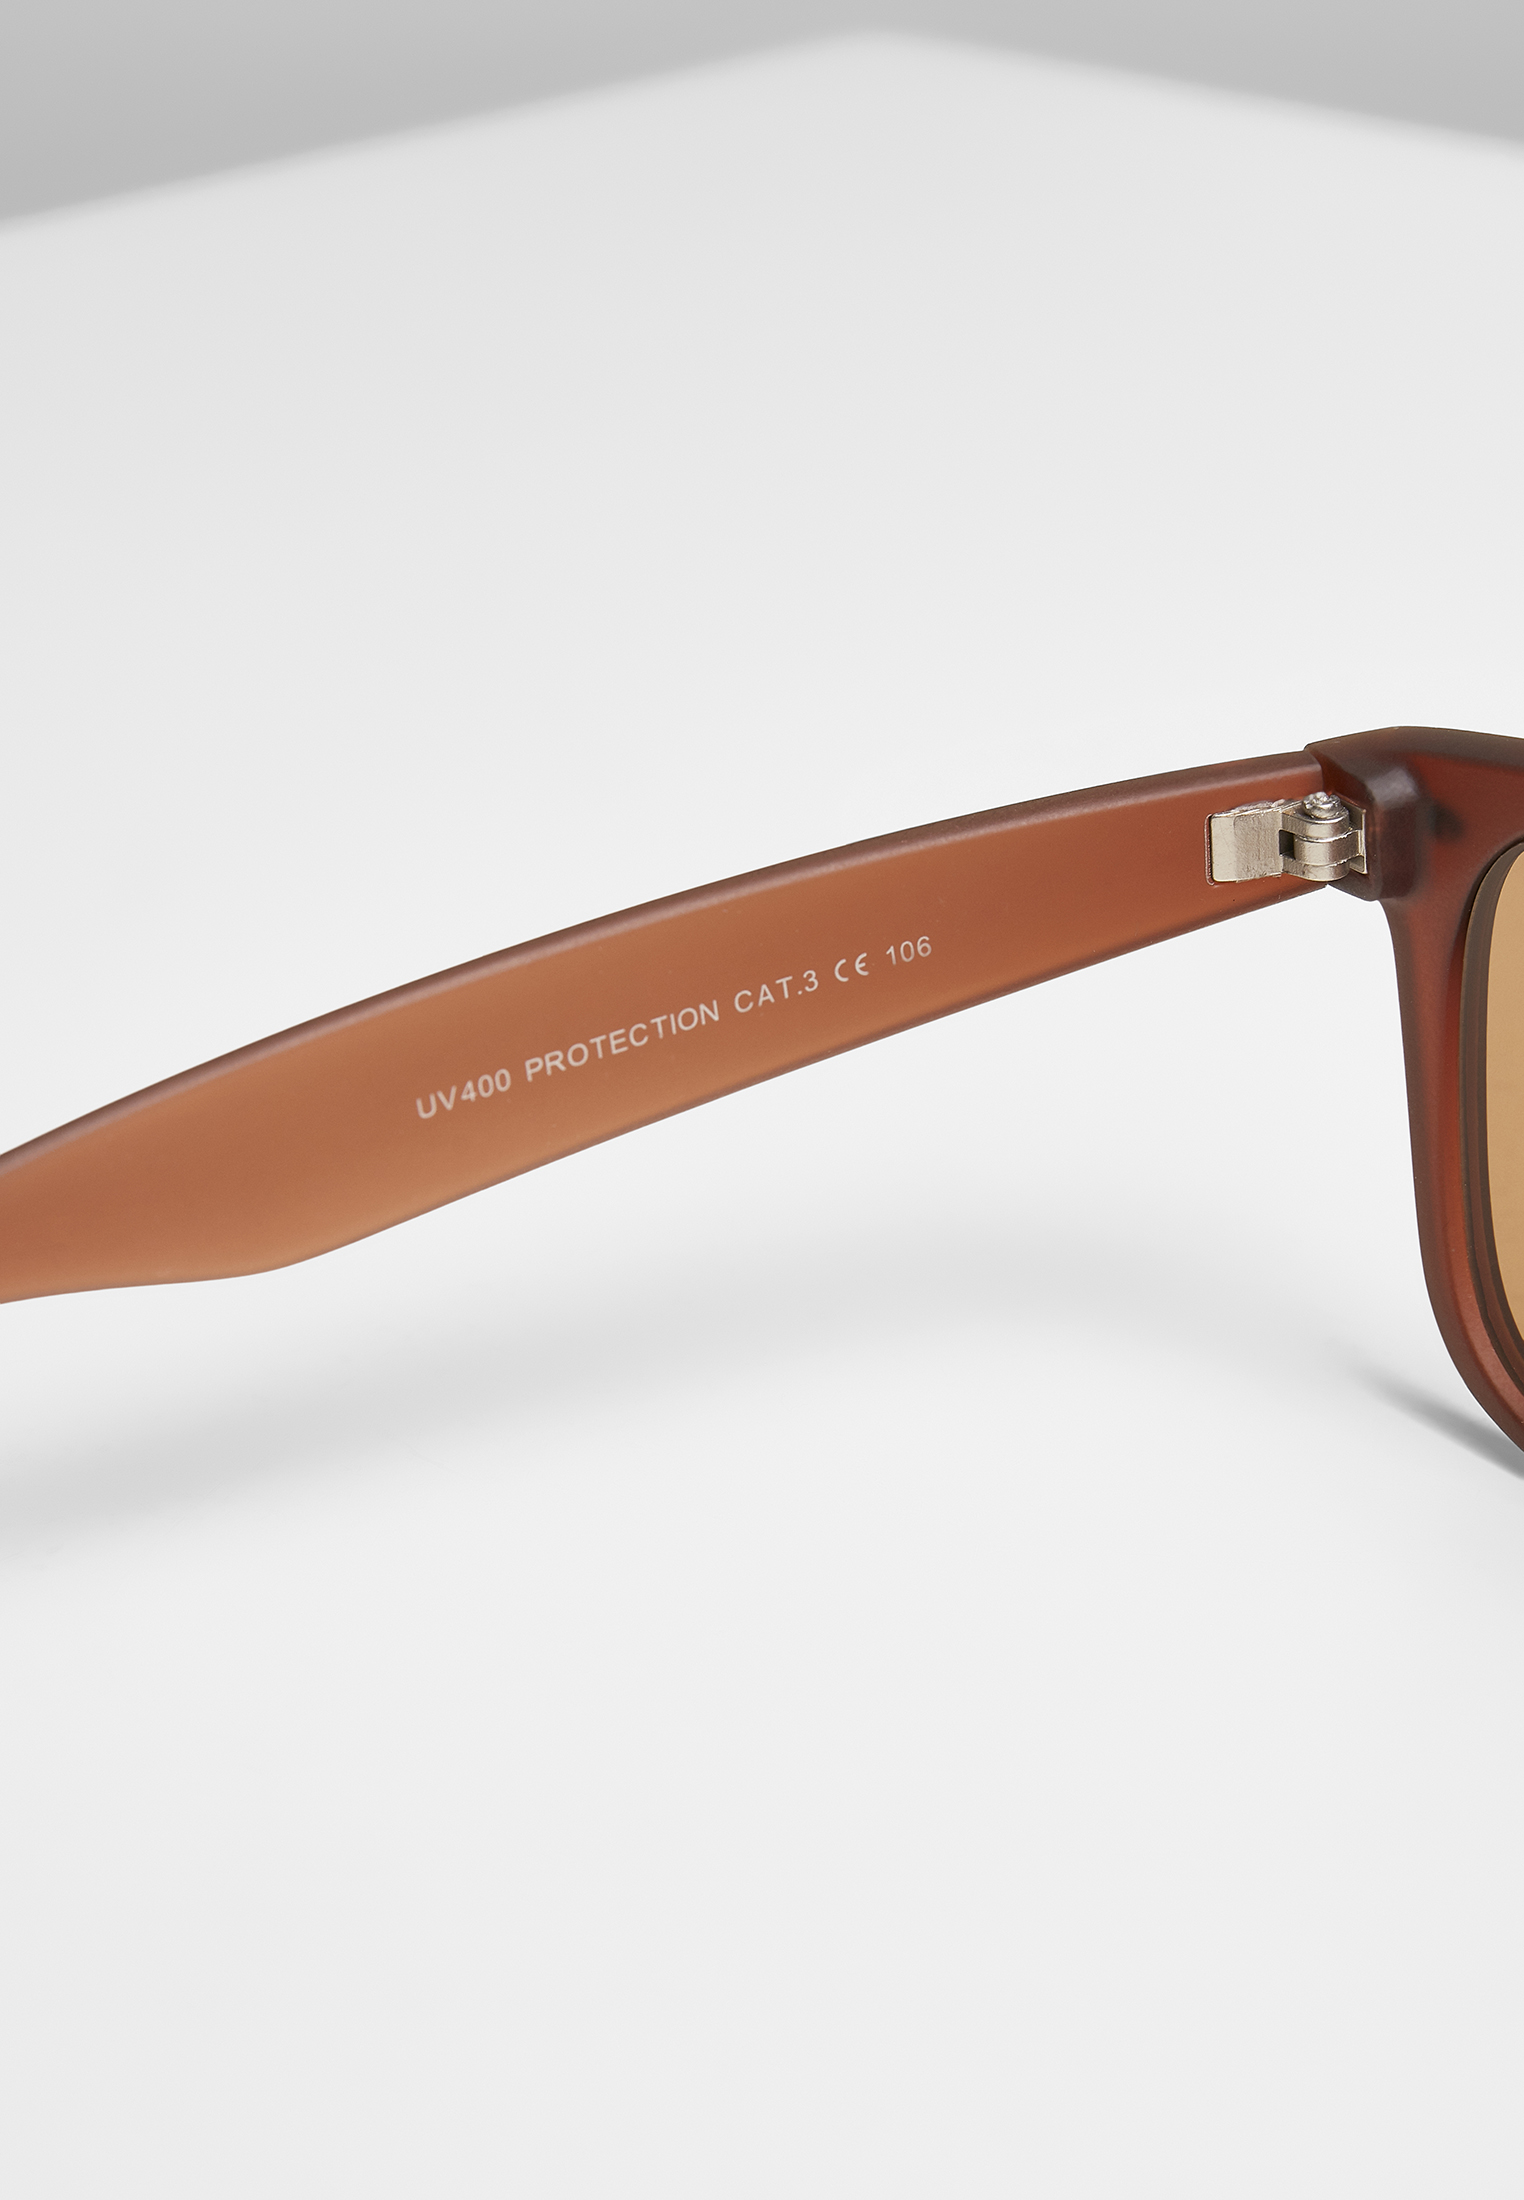 Sonnenbrillen Sunglasses Likoma UC in Farbe brown